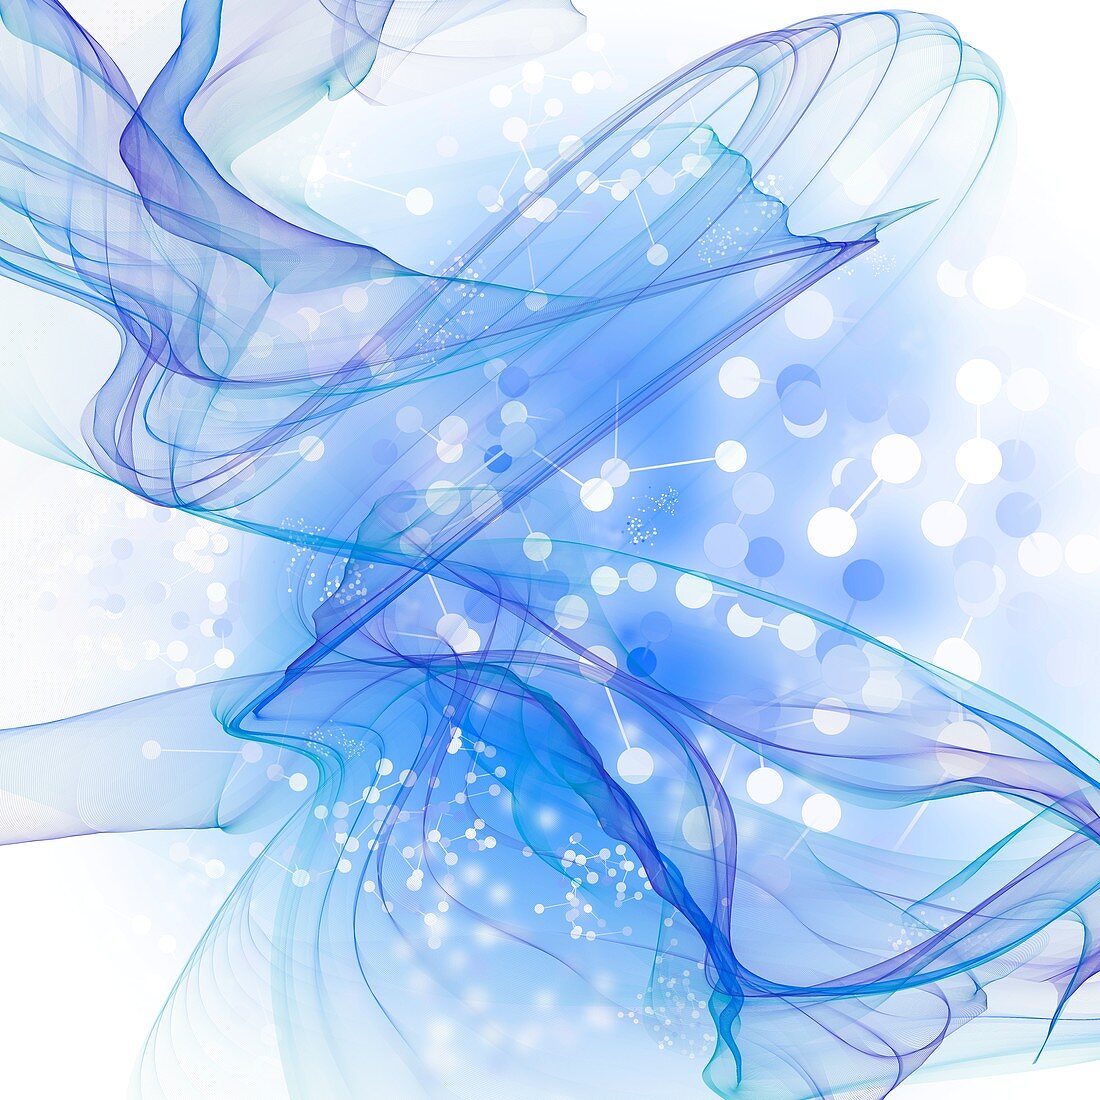 Blue swirls against white, illustration